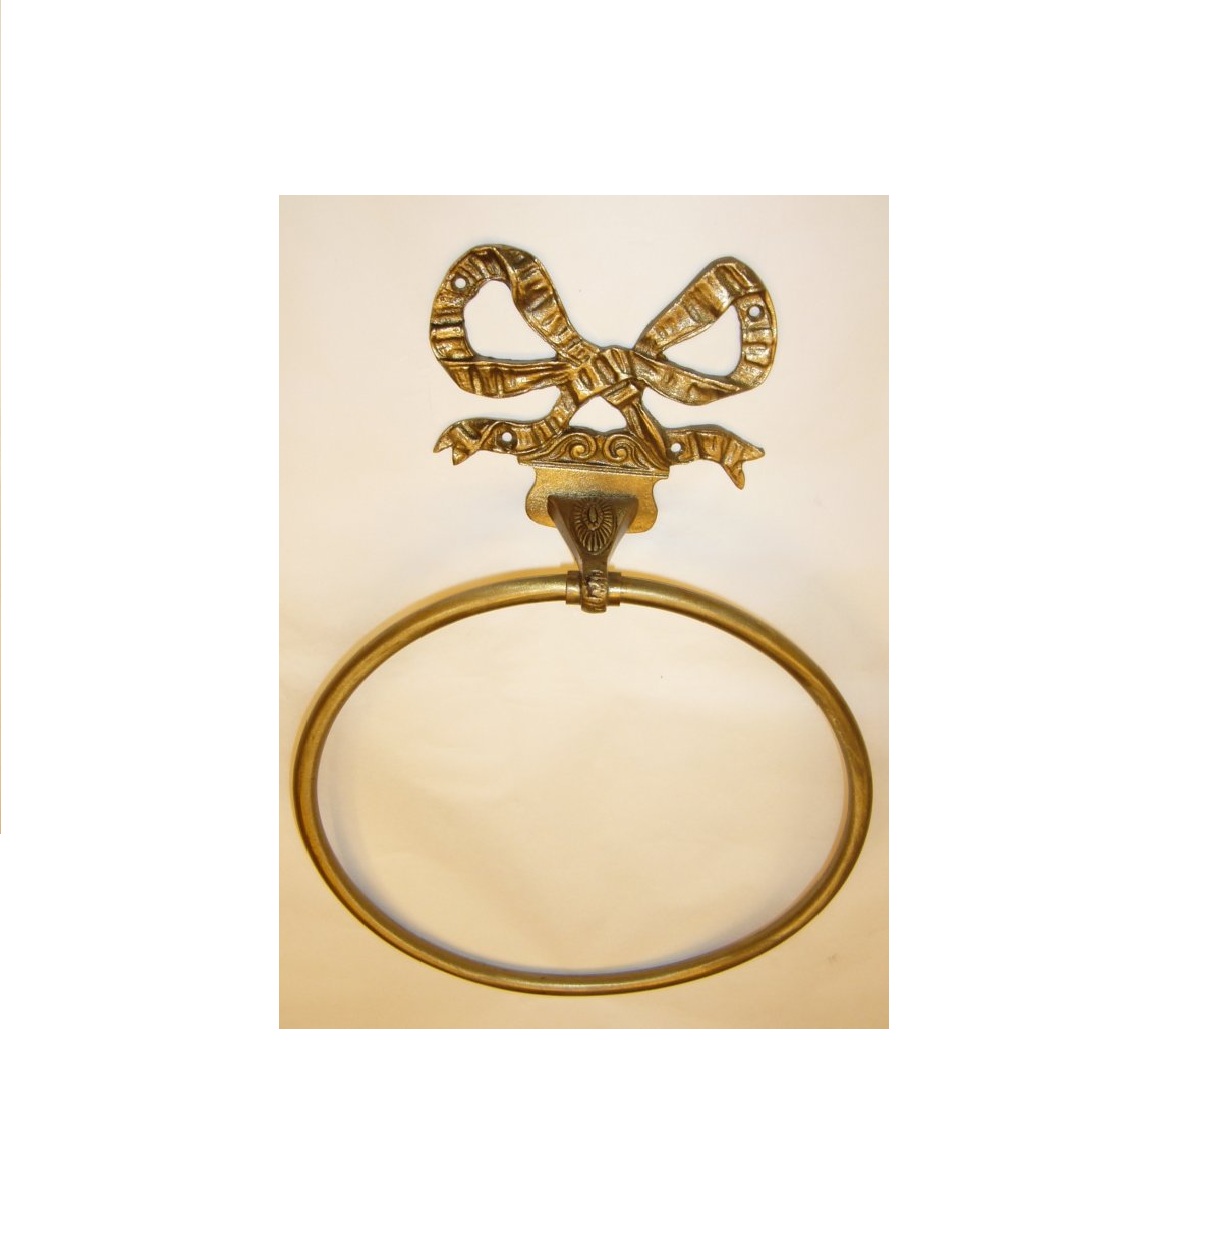 M029 anello portasciugamani con fiocco - towel ring with bow decoration.